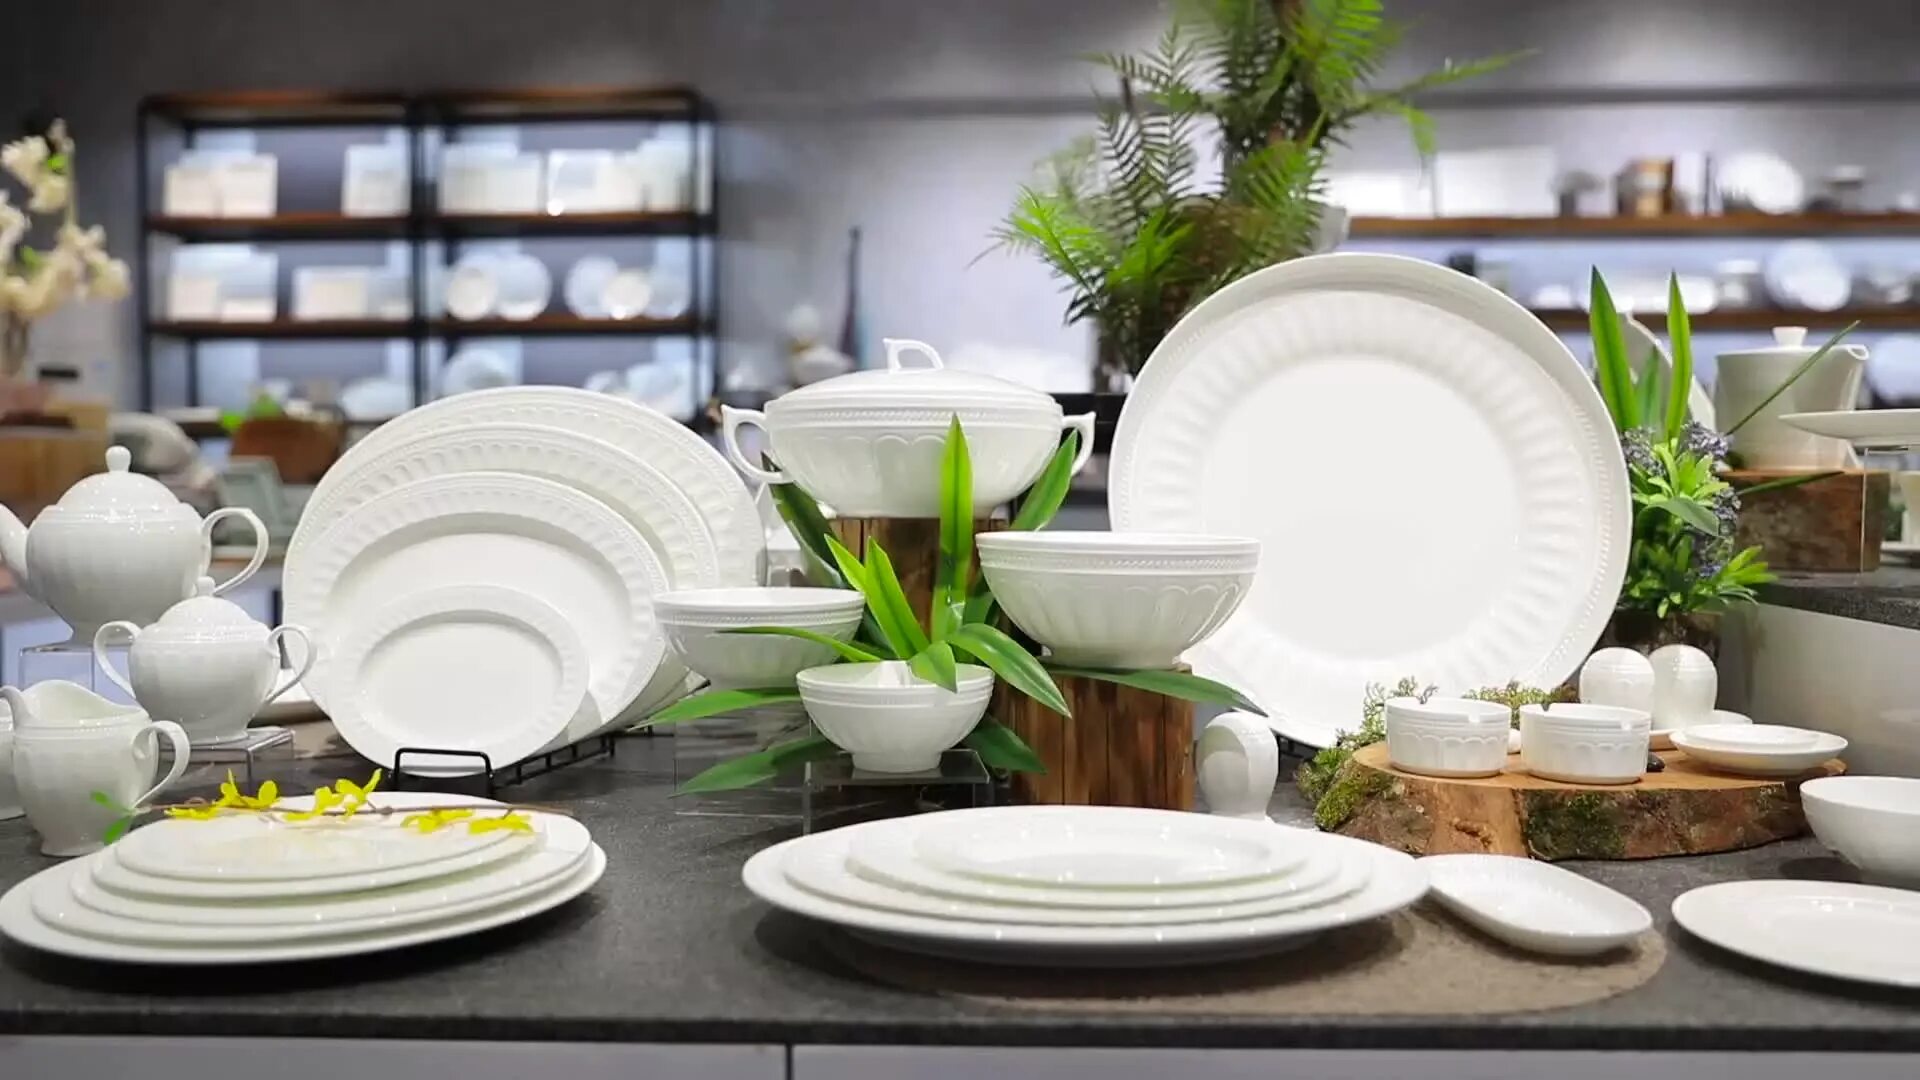 Bone porcelain. Белая фарфоровая посуда. Белая керамическая посуда. Белая посуда современная. Набор белых тарелок.